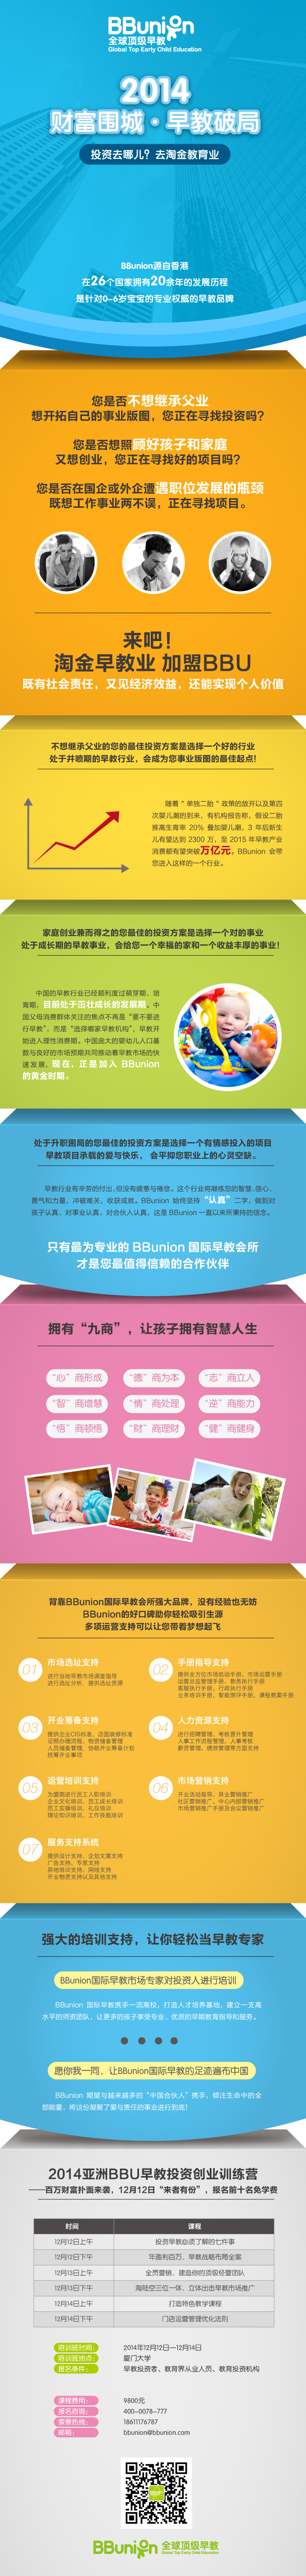 2014亚洲BBunion早教投资创业训练营